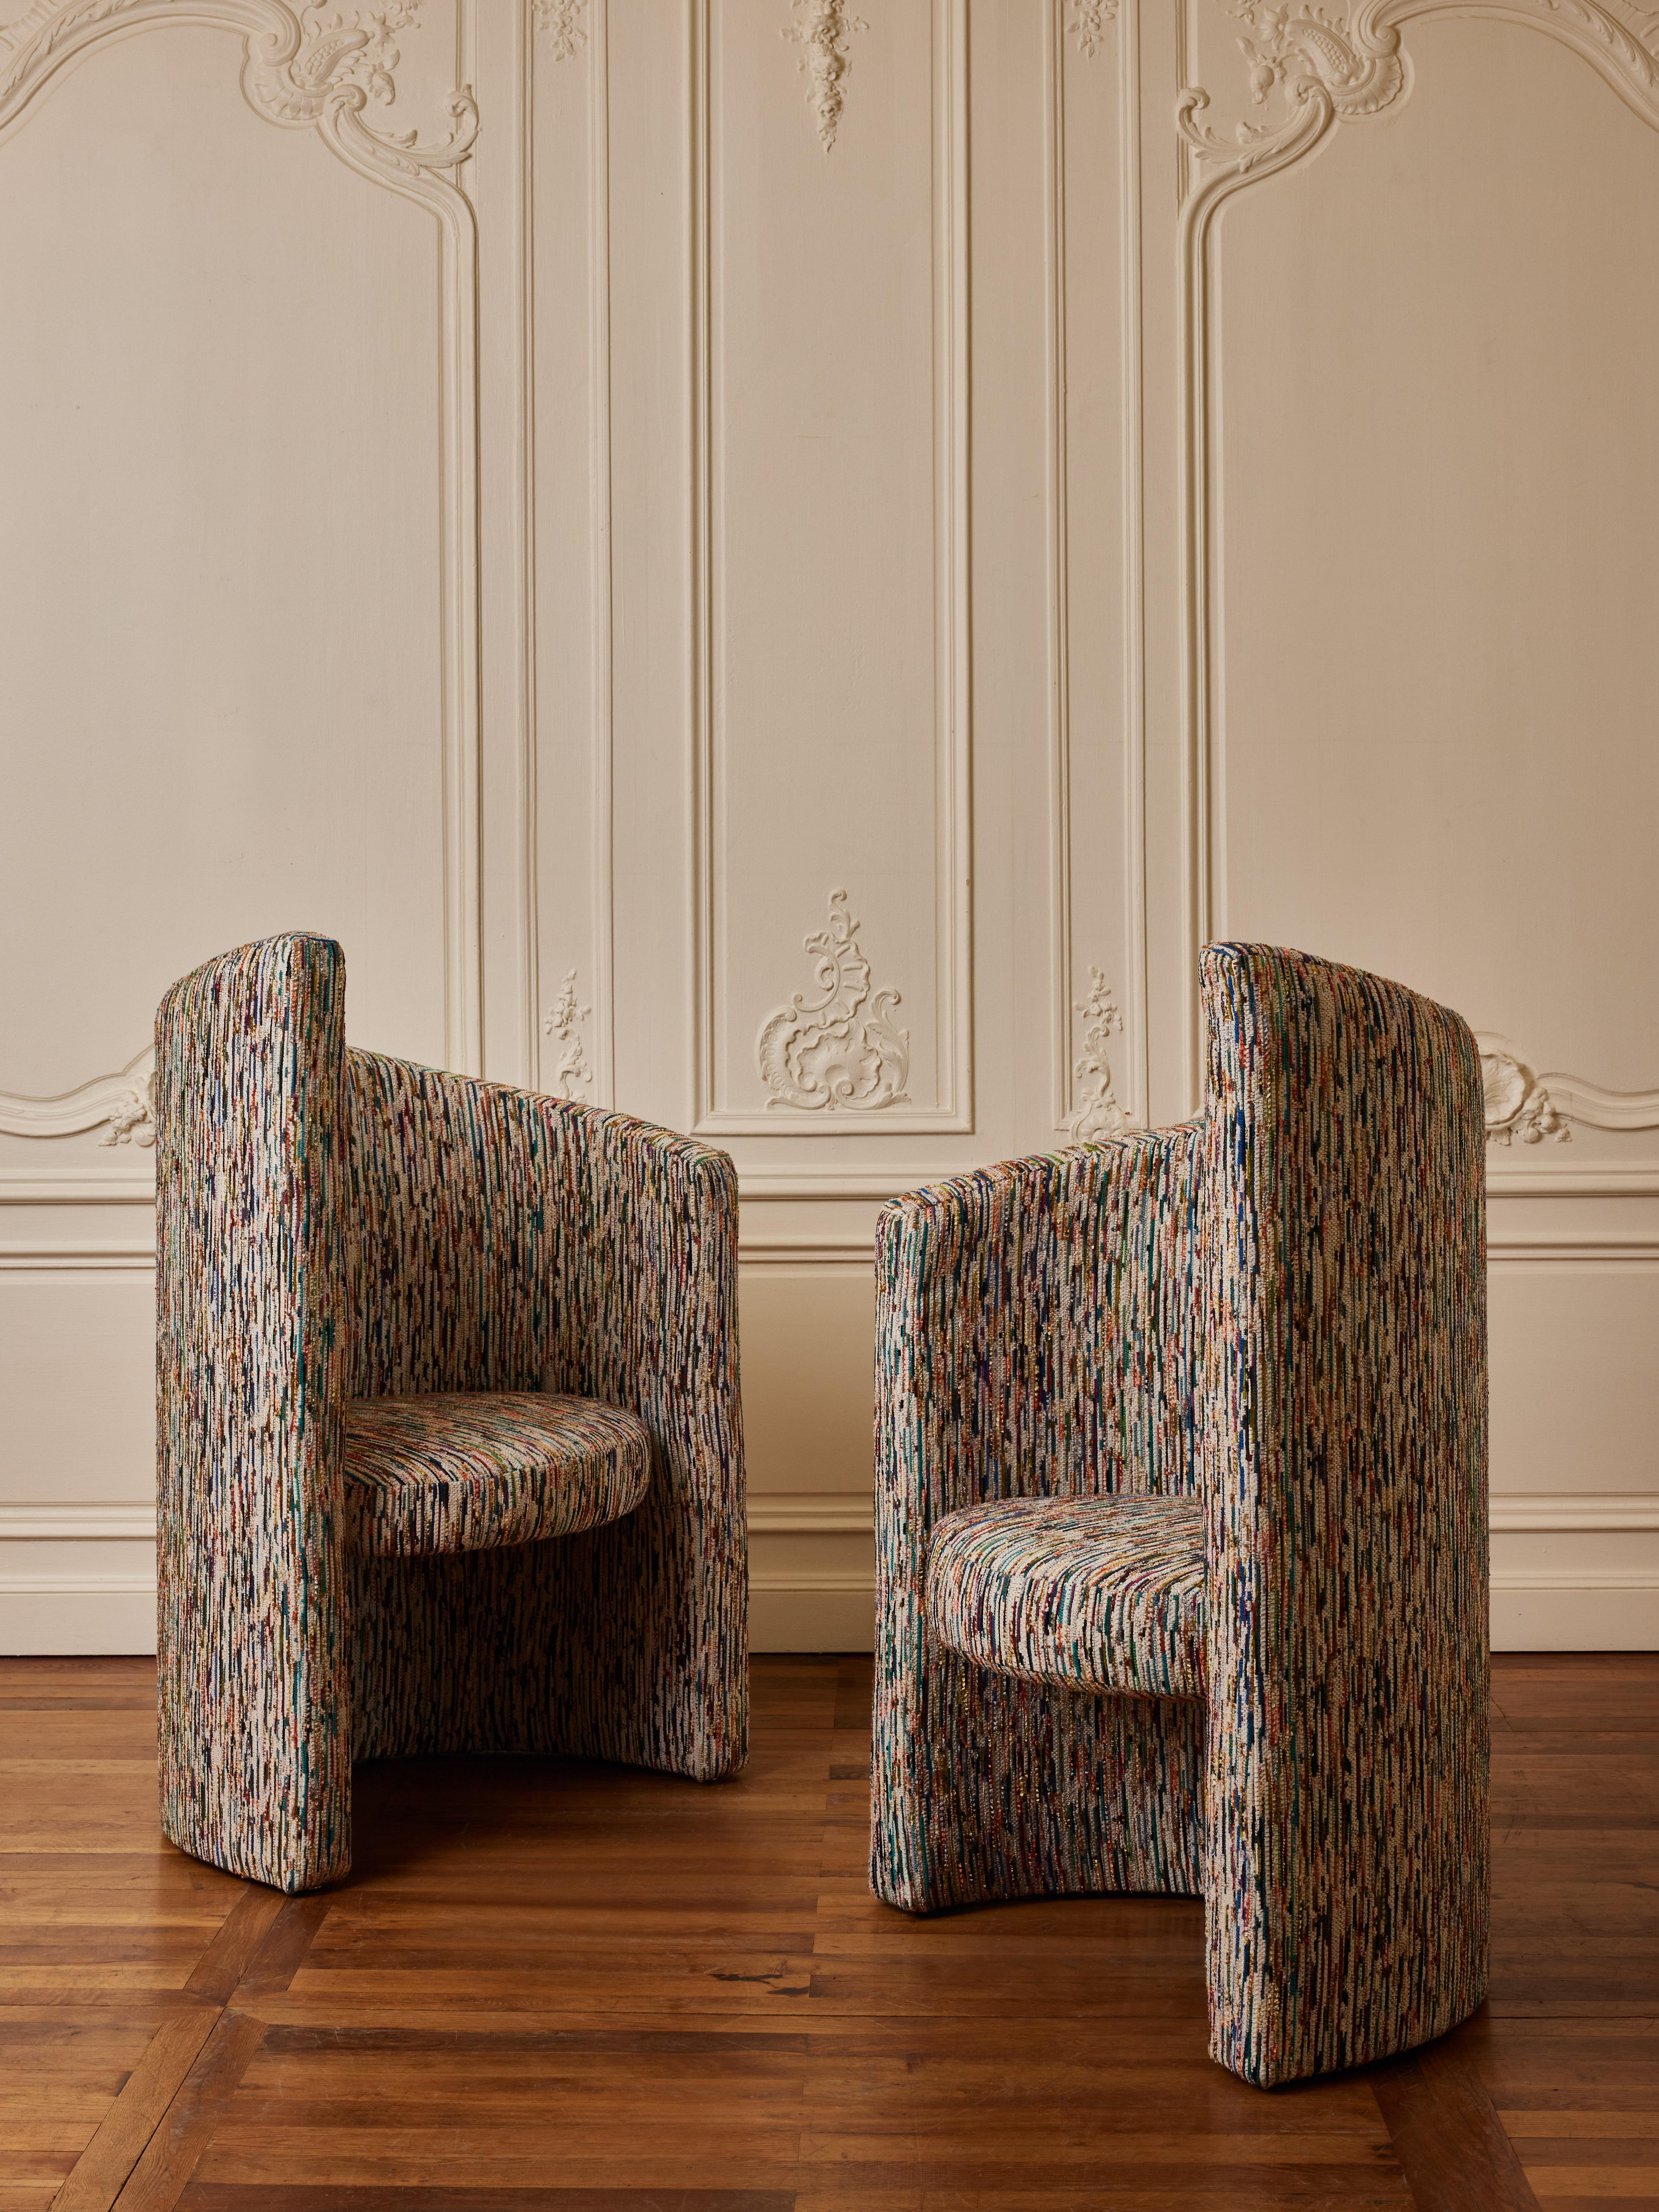 Ein Paar Sessel, bezogen mit einem Stoff von Missoni.
Gestaltung durch das Studio Glustin.
Frankreich, 2023